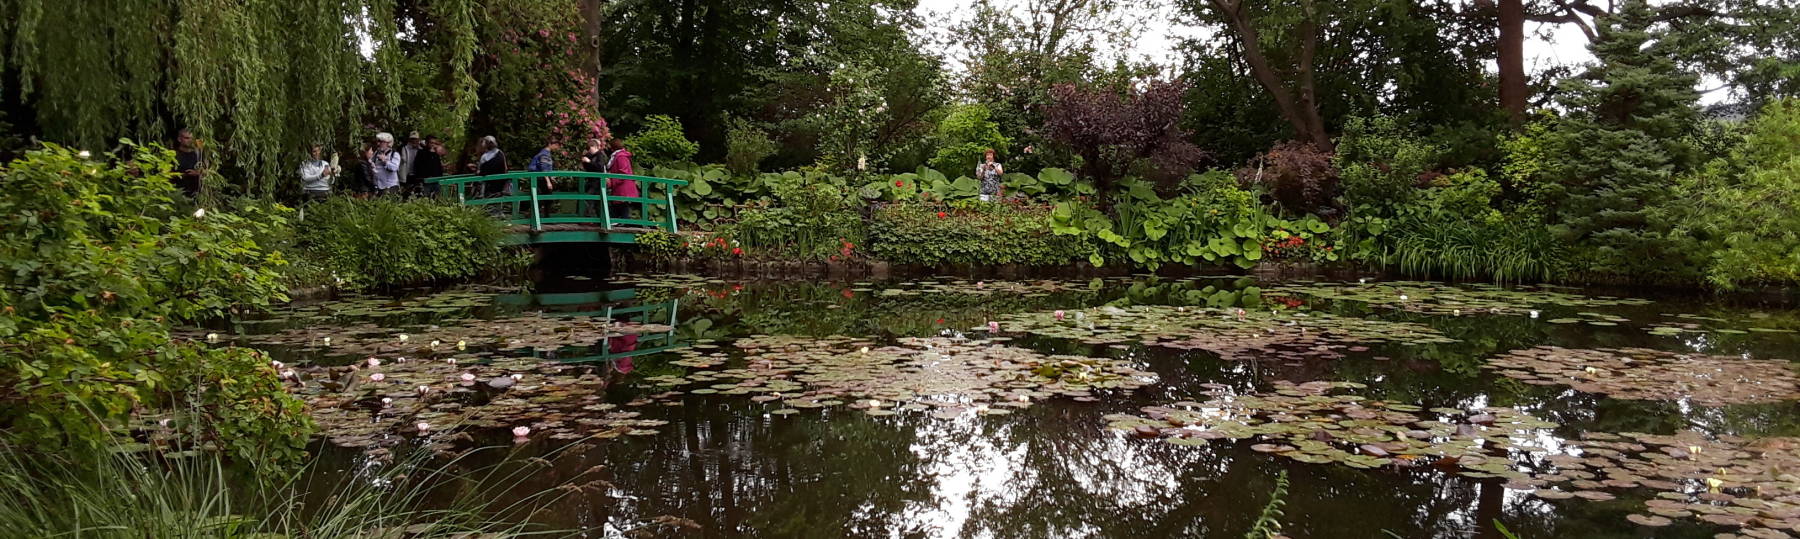 Claude Monet's water garden.